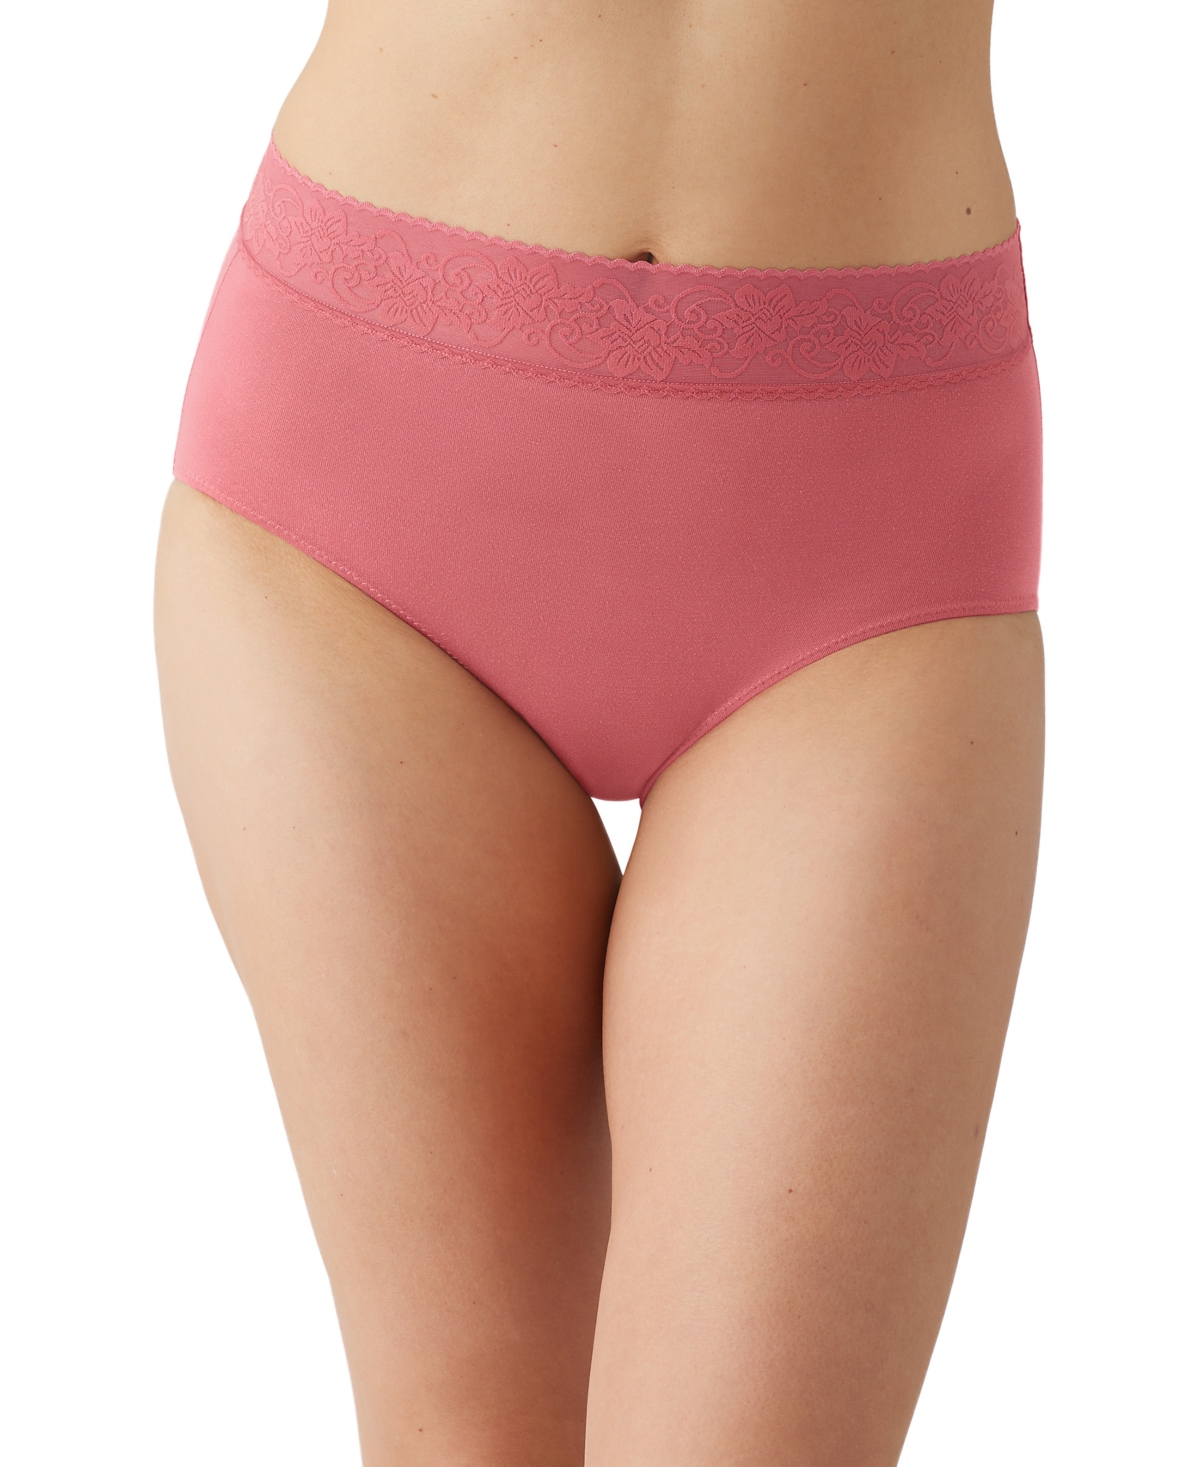 Shop Wacoal Women's Comfort Touch Brief Underwear 875353 In Baroque Rose